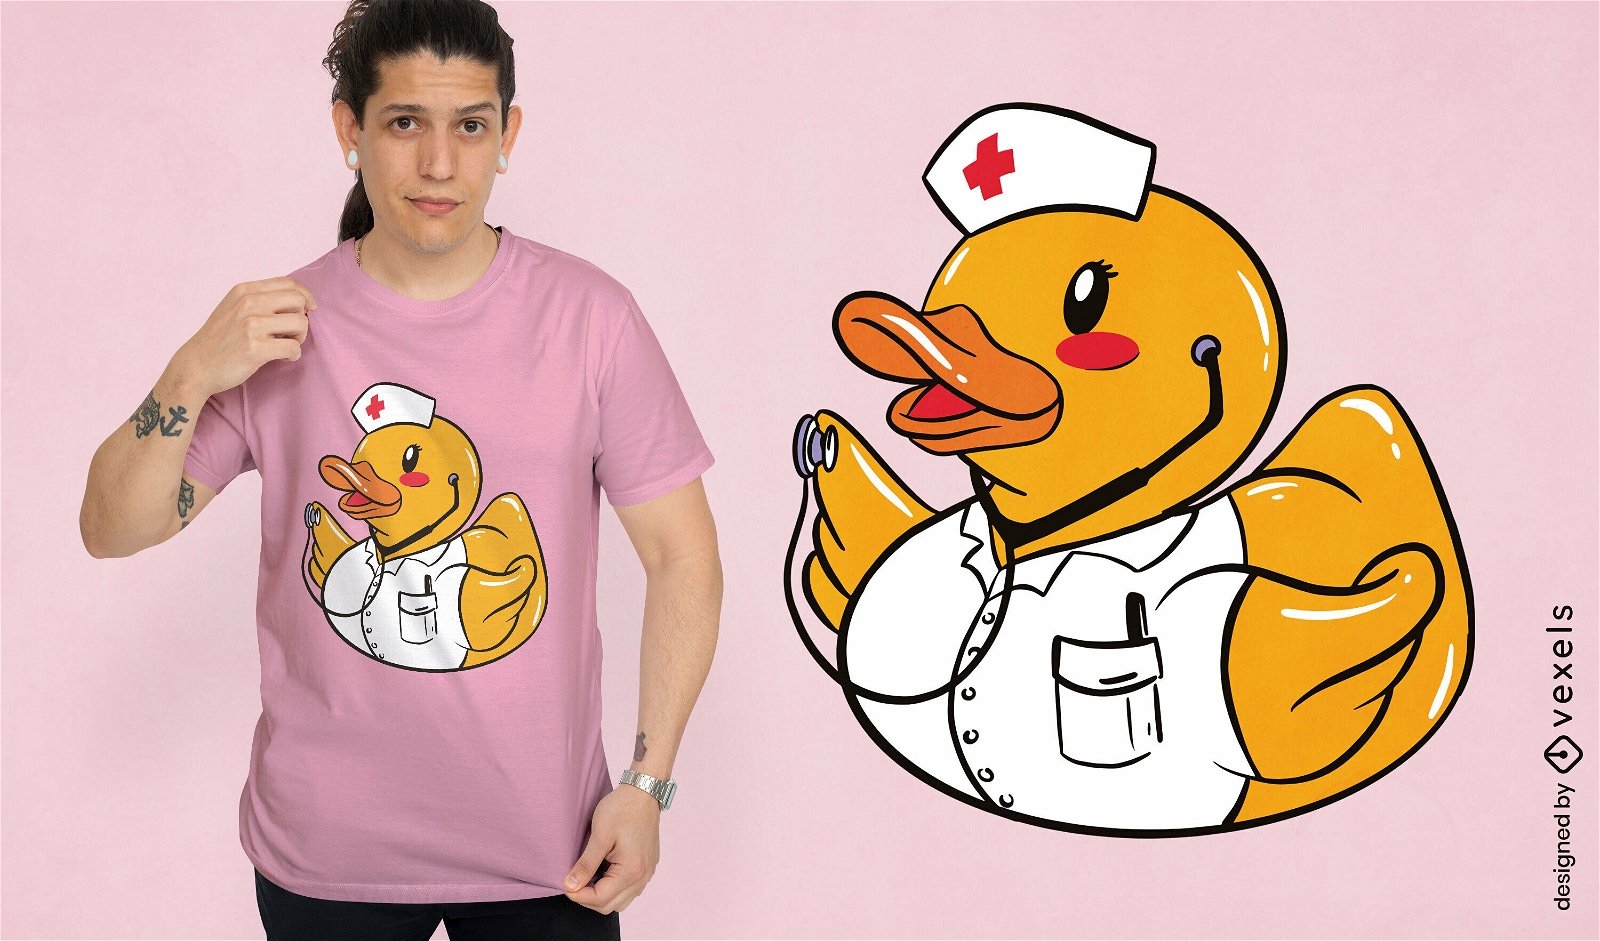 Duck toy animal nurse t-shirt design